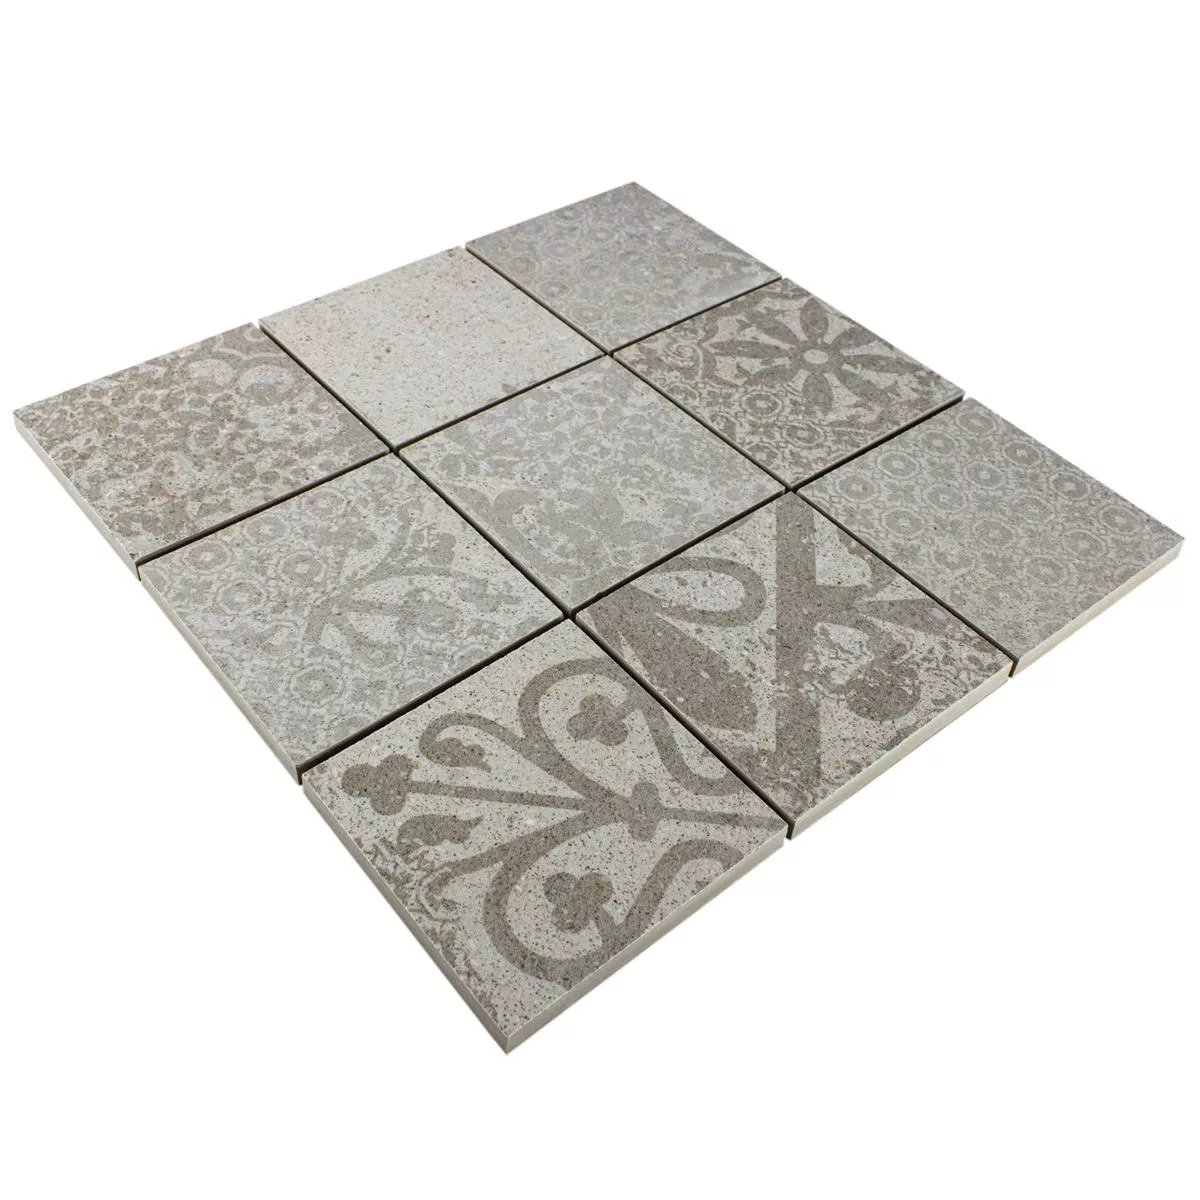 Ceramic Mosaic Tiles Eylem Retro Optic Beige Q95